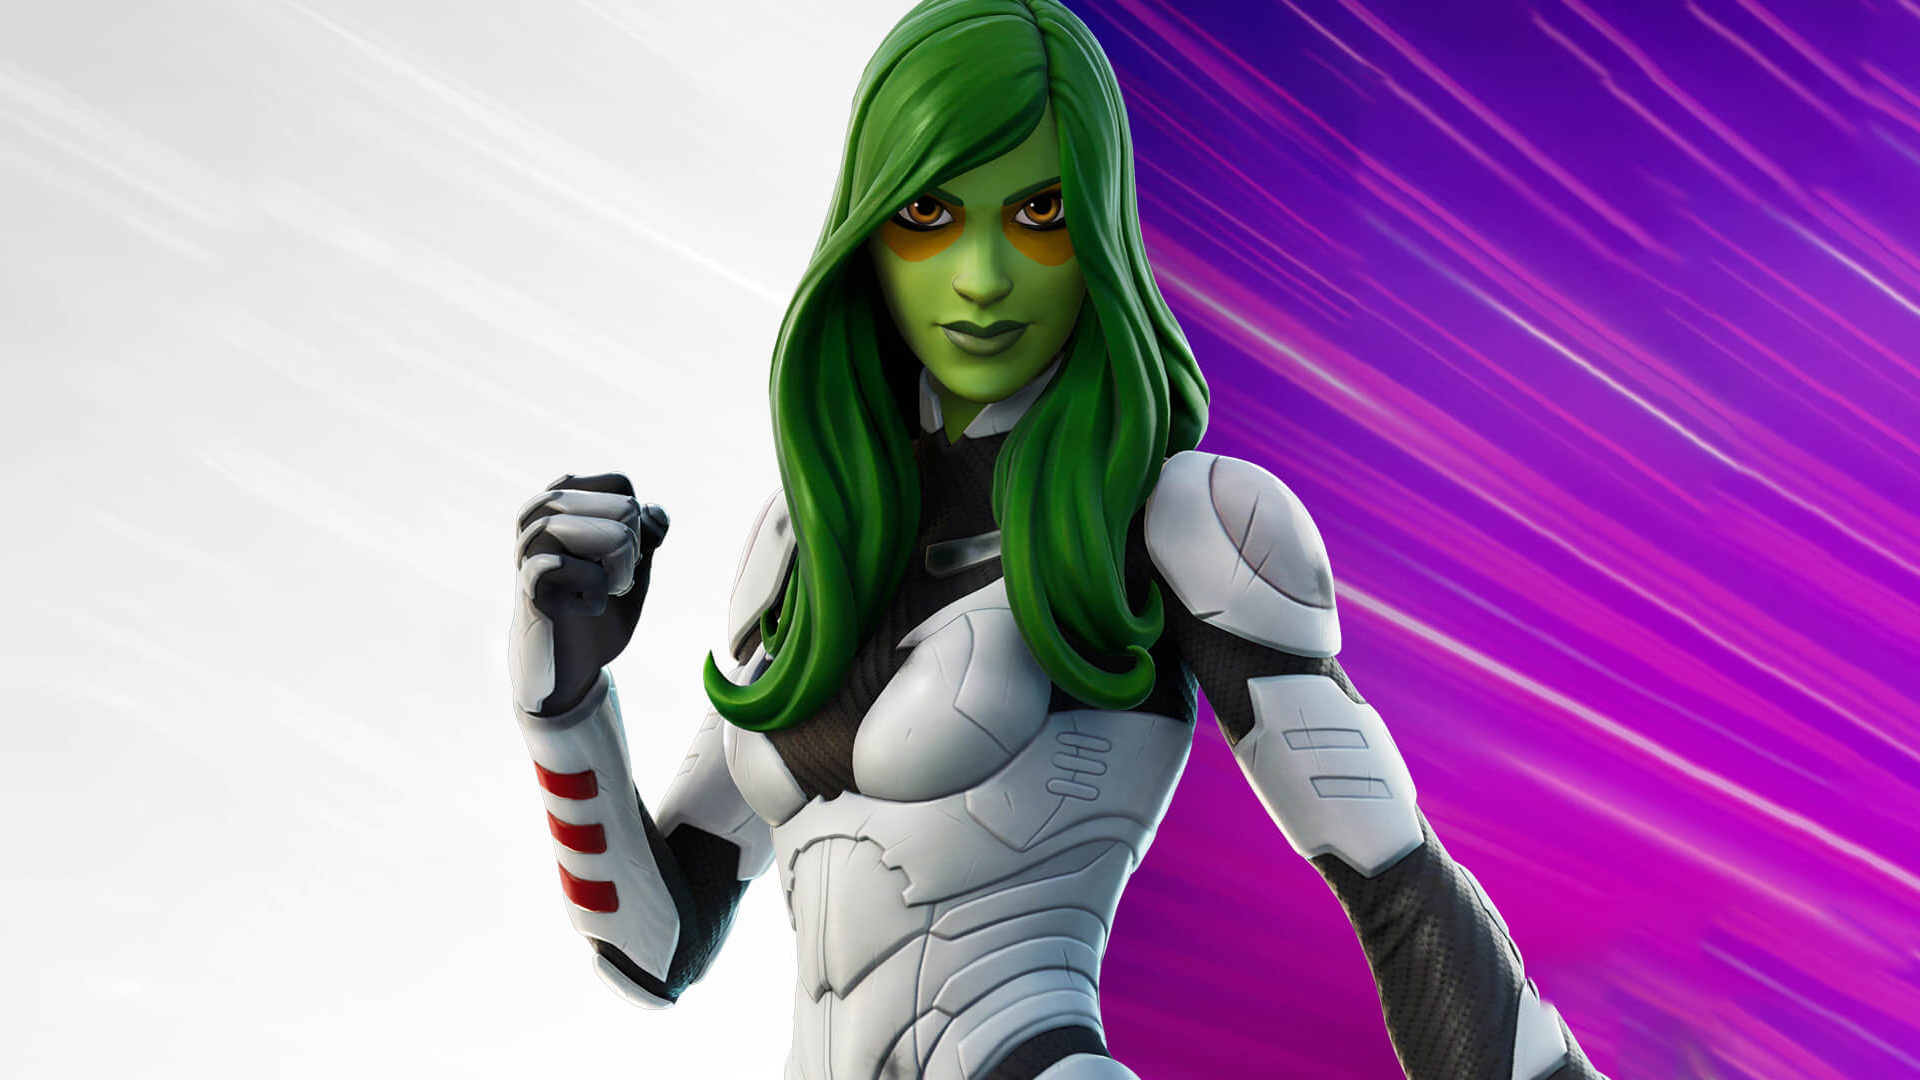 How to unlock the Gamora skin in Fortnite